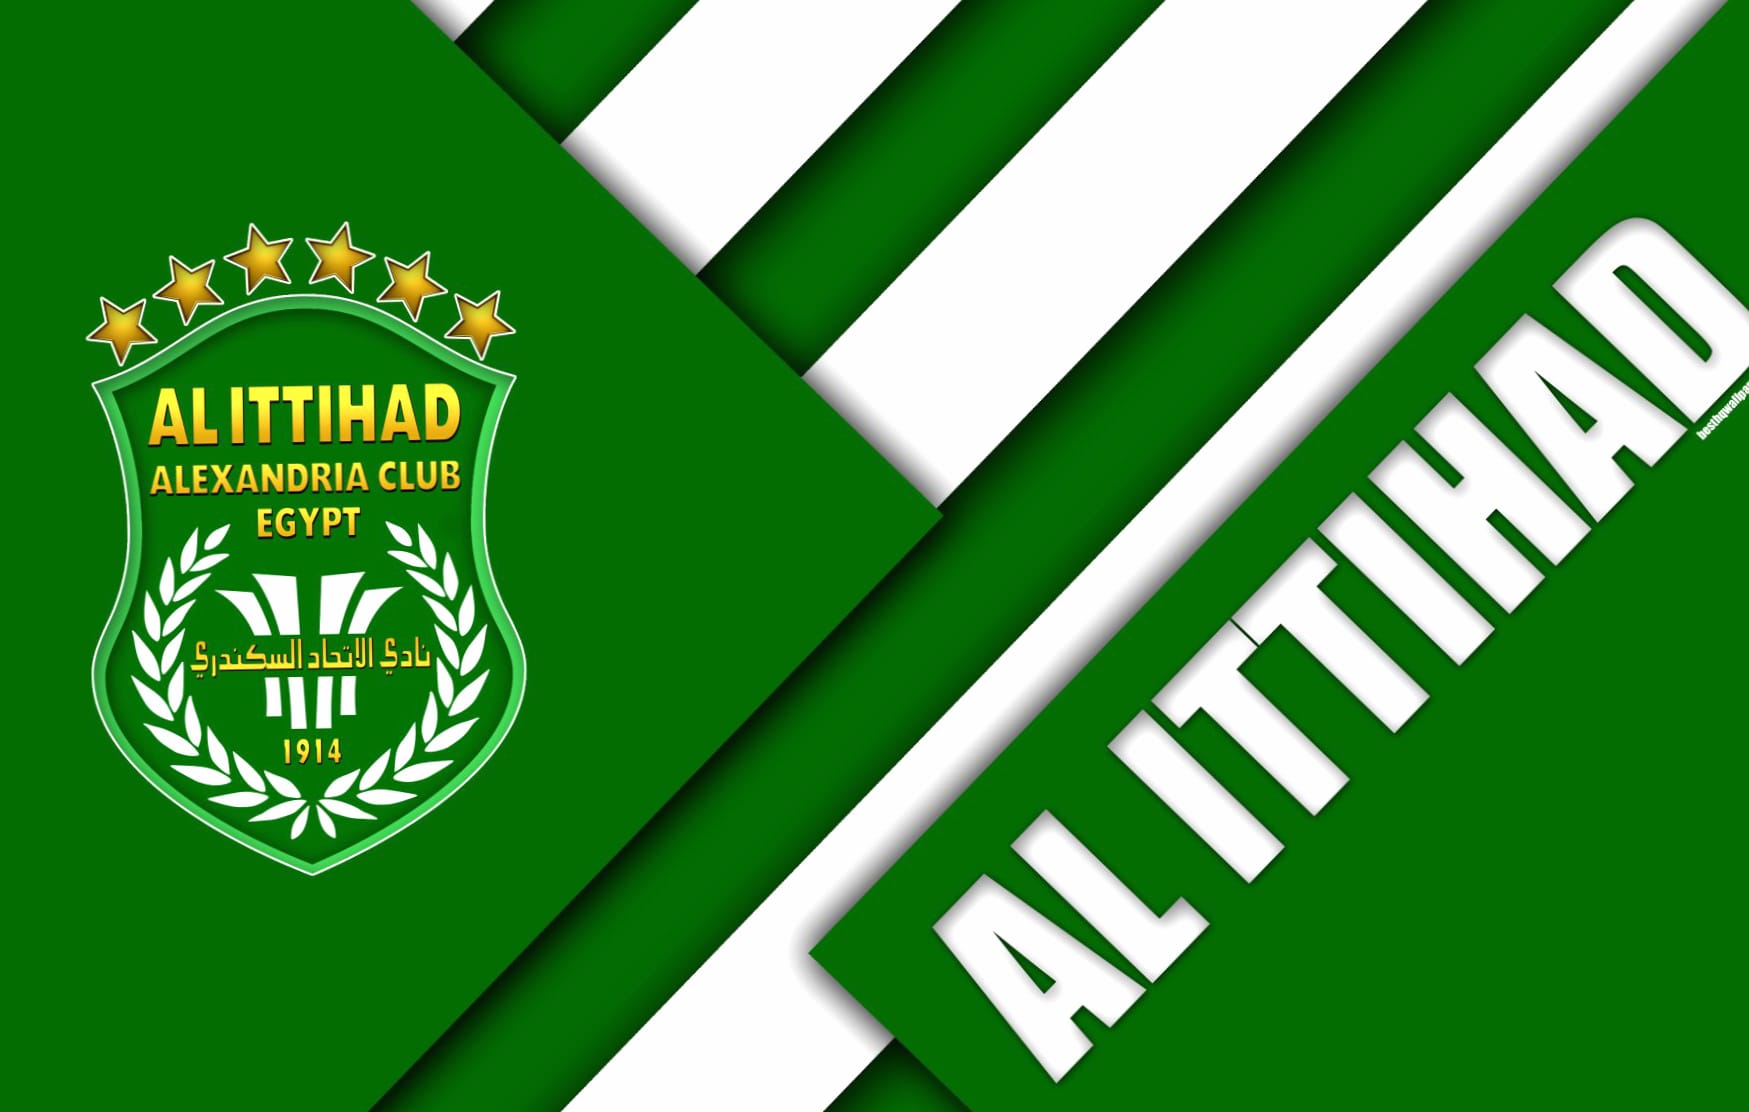 Al Ittihad Alexandria Club at 1600 x 1200 size wallpapers HD quality